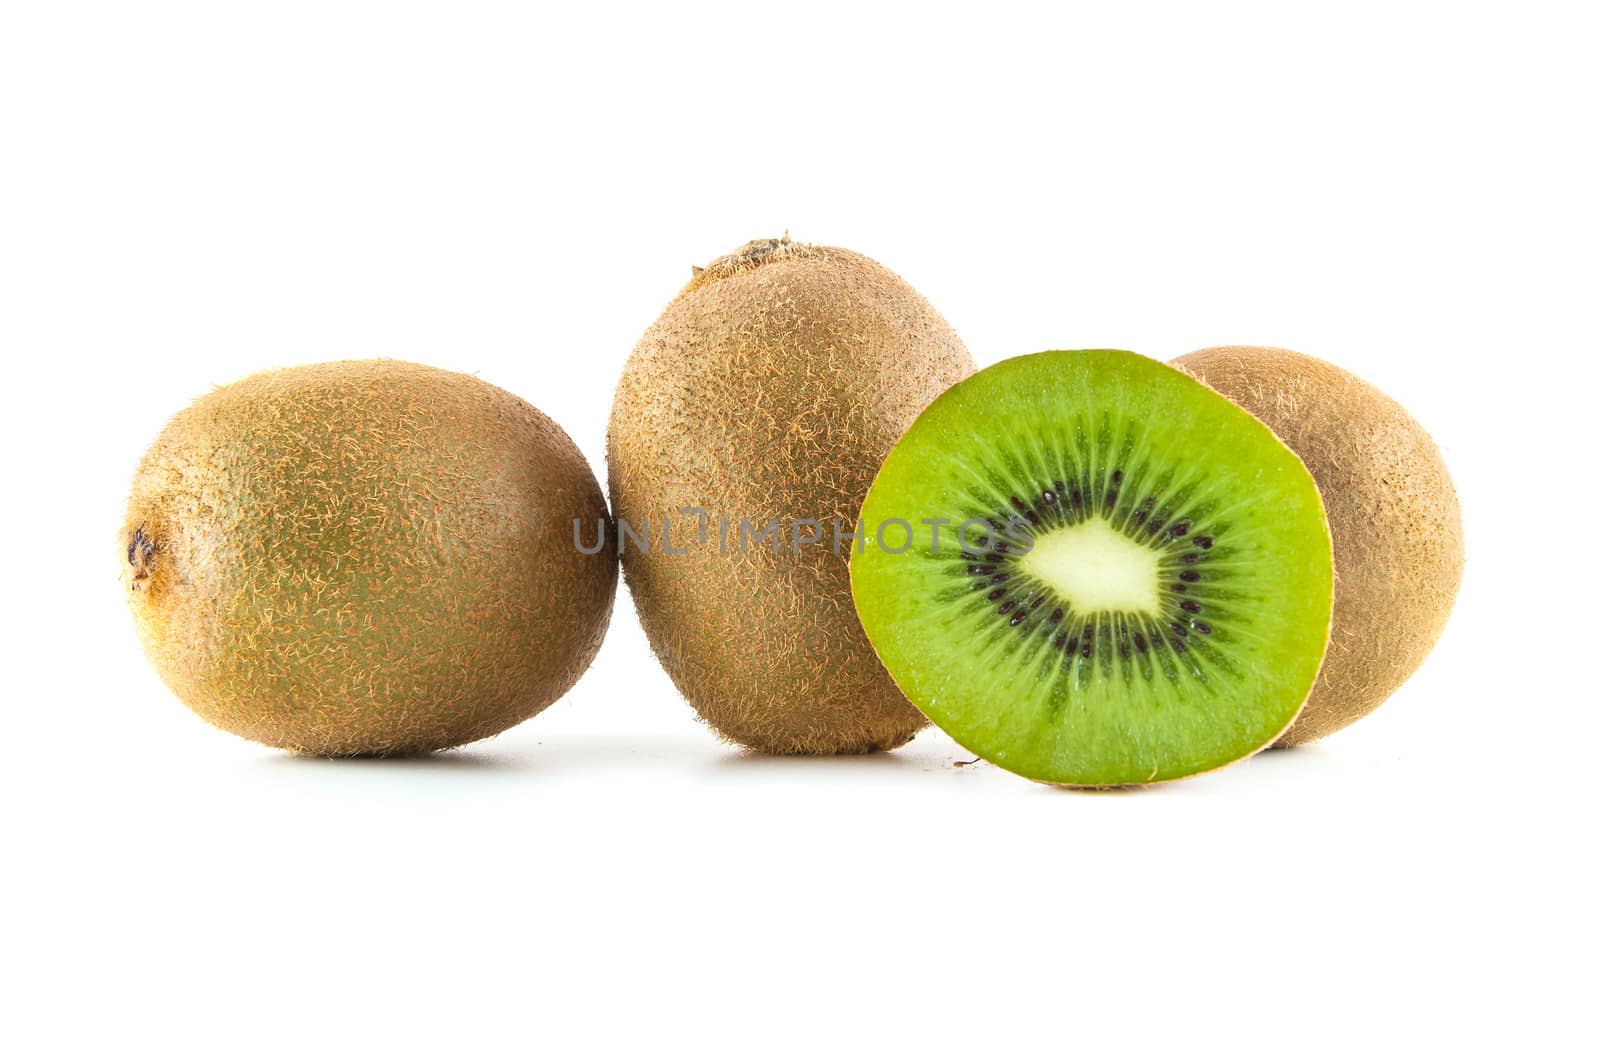 Fresh kiwi fruit by mkos83